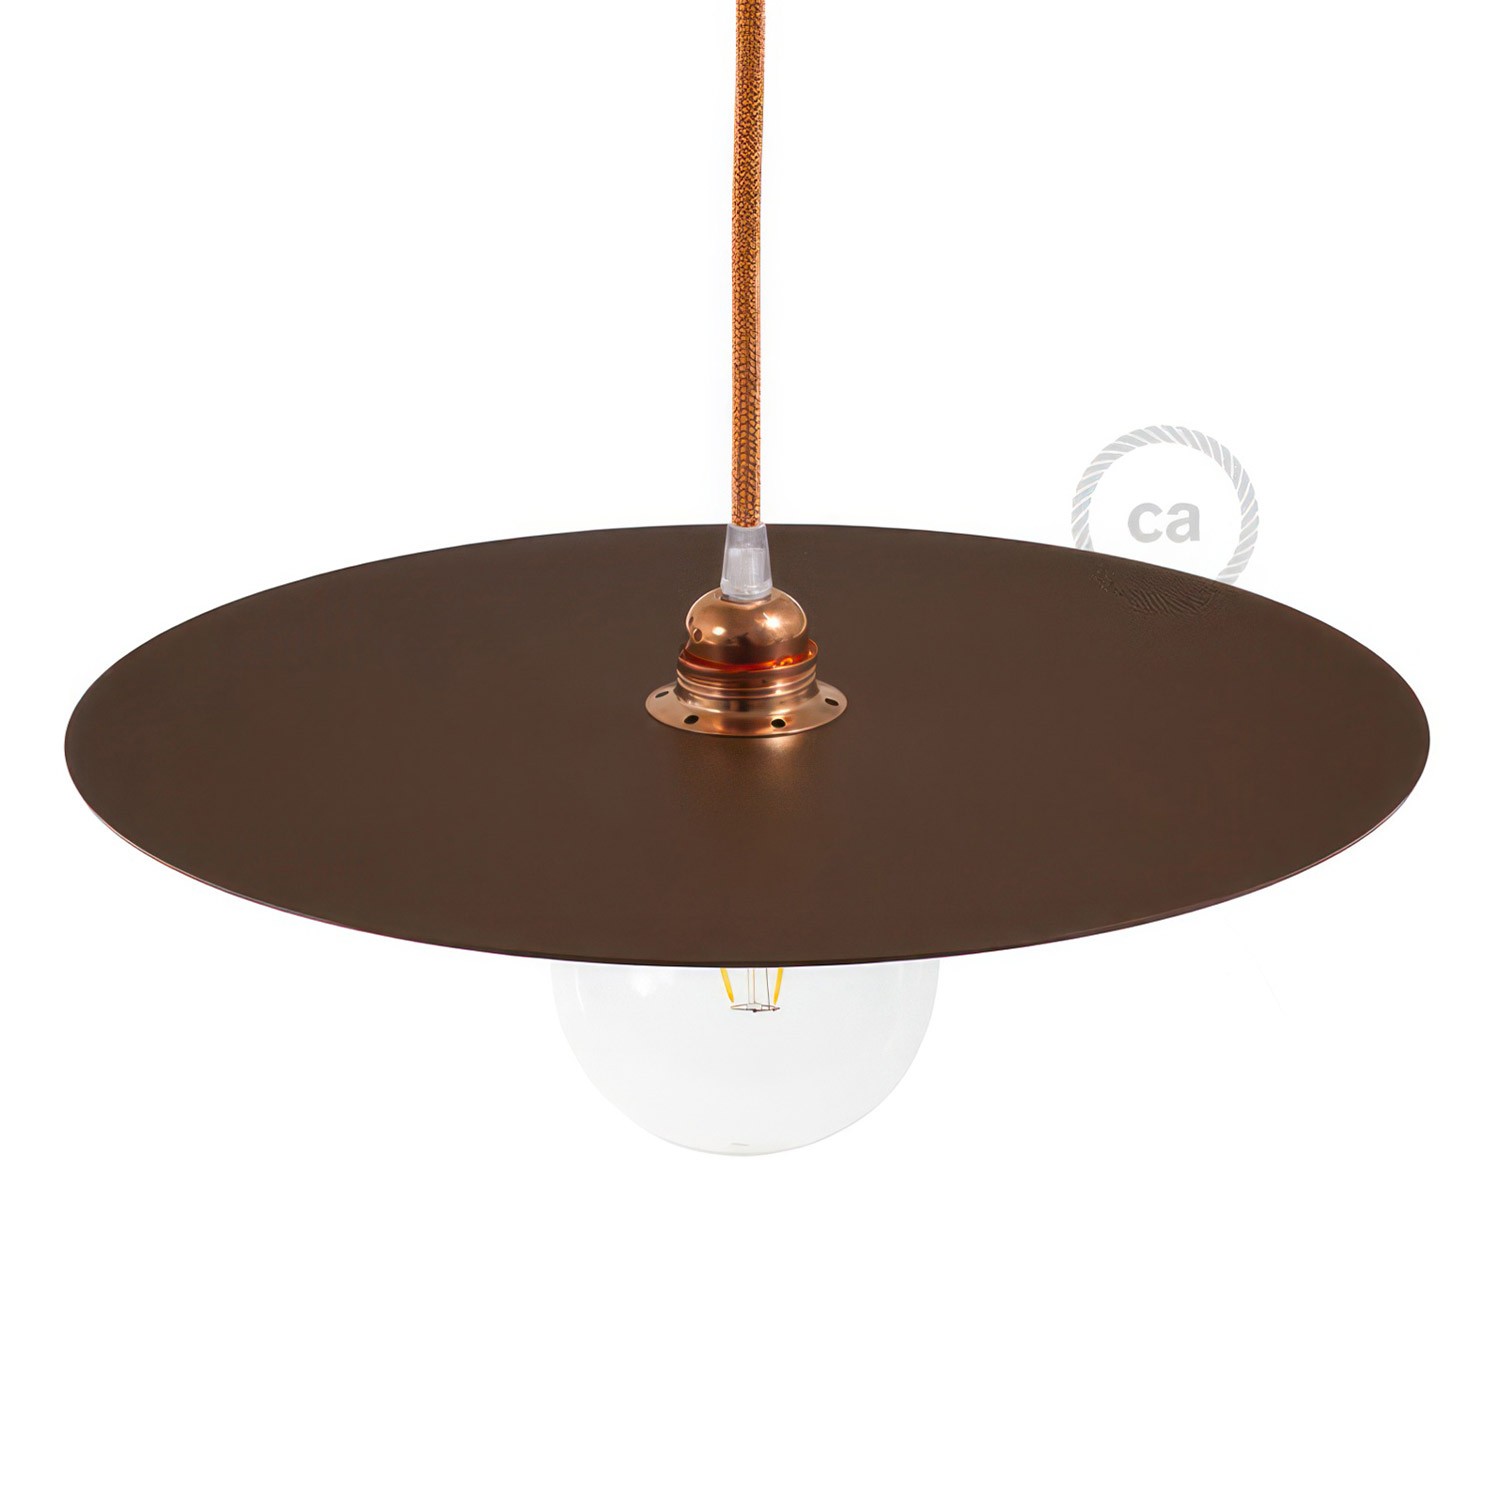 Piatto Ellepì oversize in ferro verniciato per lampade a sospensione, diametro 40 cm - Made in Italy